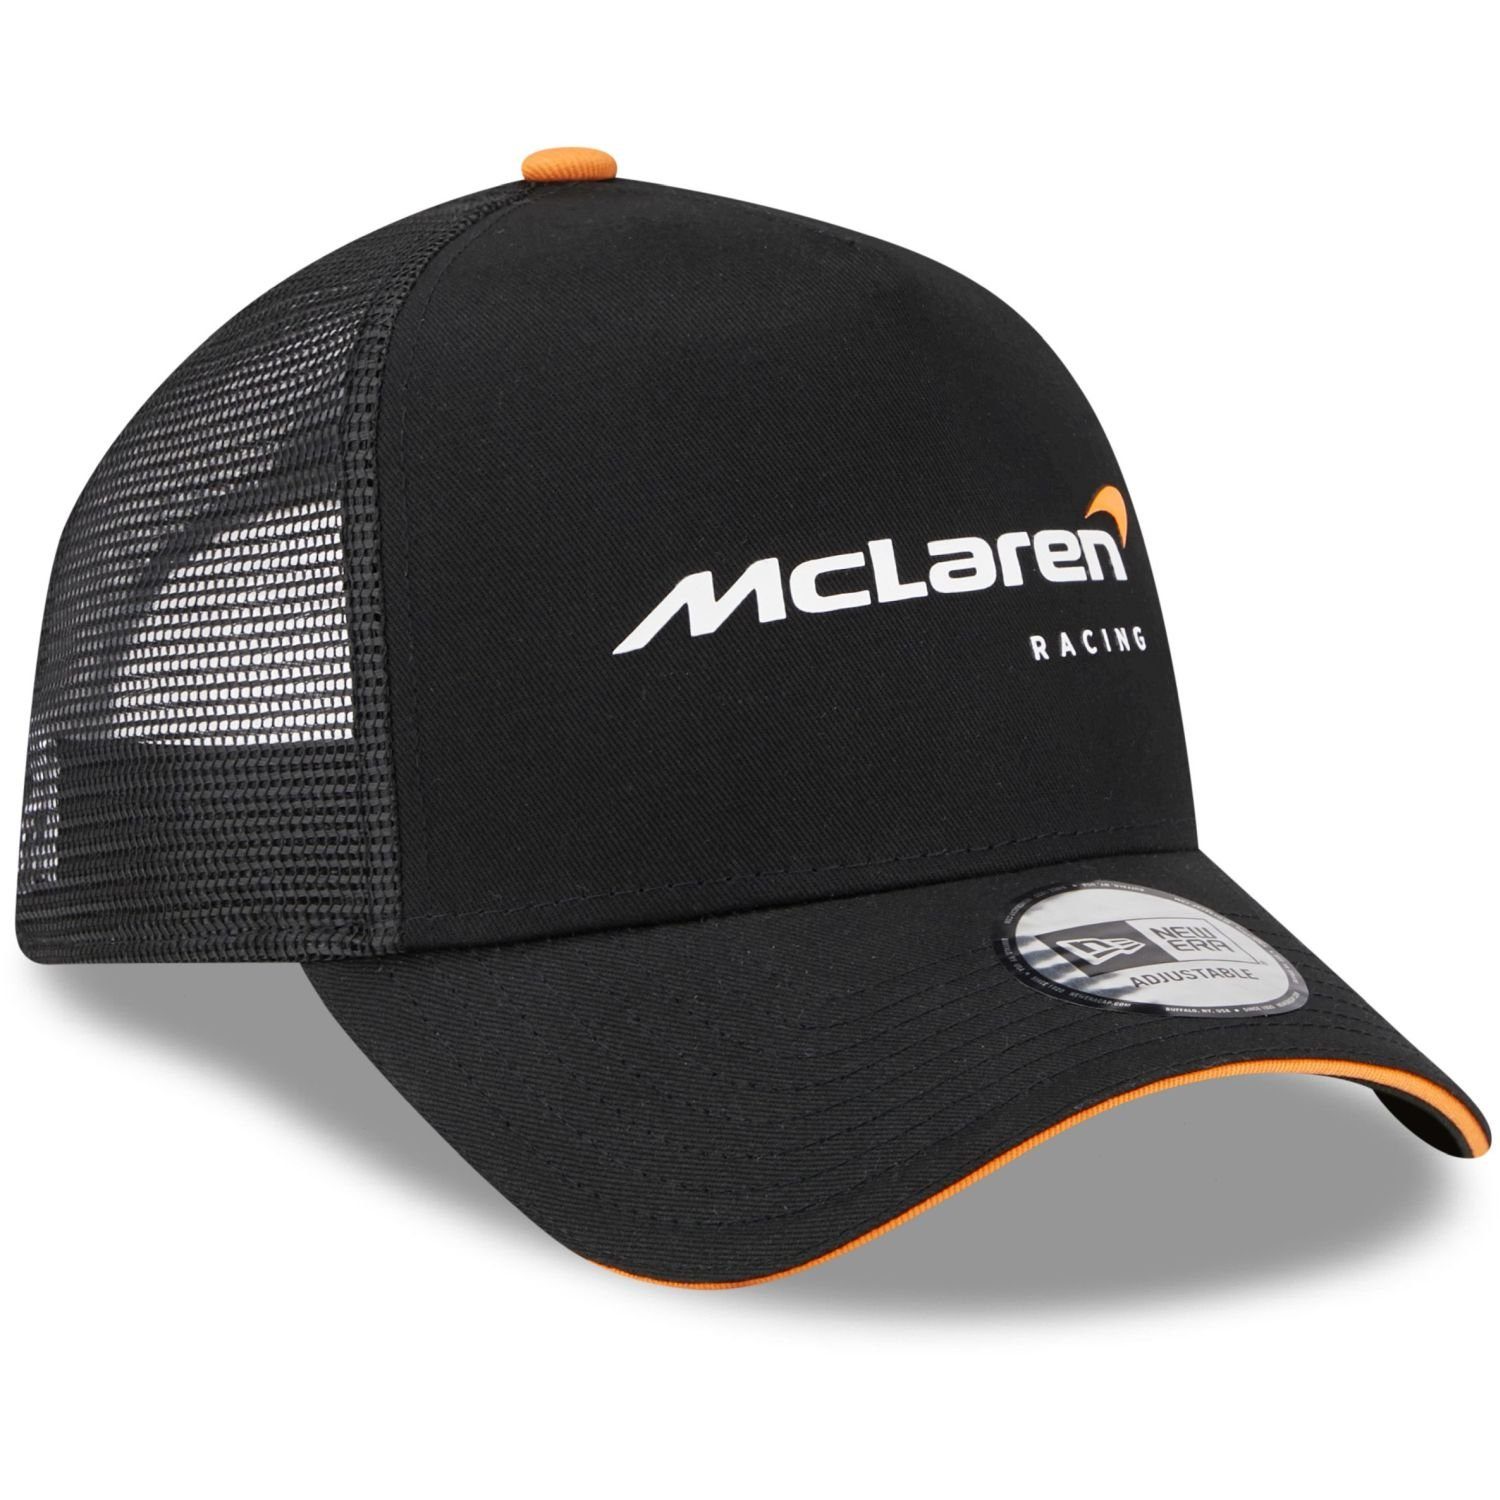 McLaren Trucker New AFrame F1 Trucker Era Cap